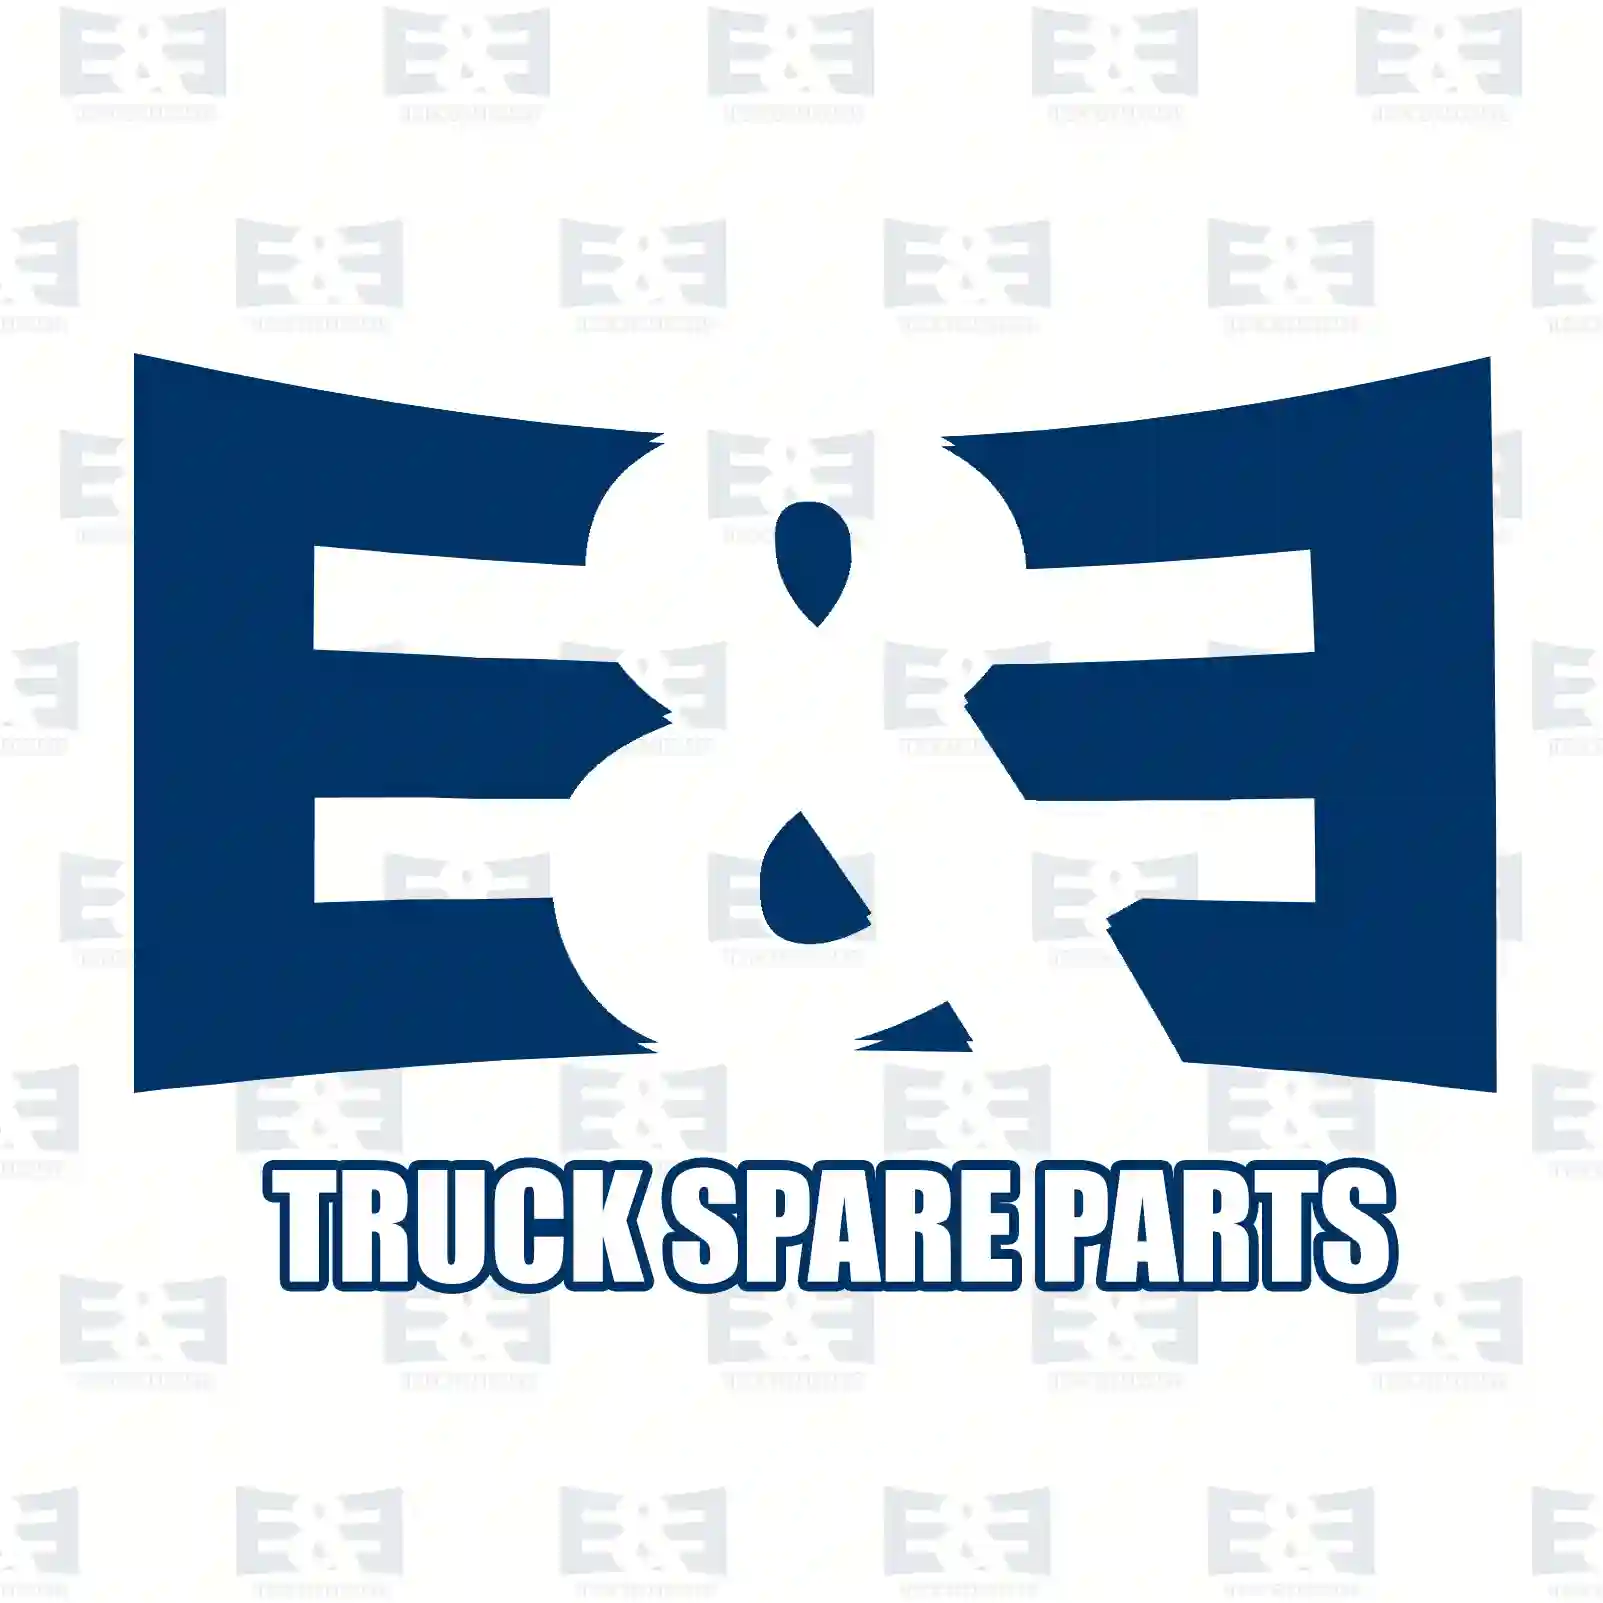 Brake caliper, right, reman. / without old core, 2E2296663, 42470848, 42536173, 42536625, 42548188 ||  2E2296663 E&E Truck Spare Parts | Truck Spare Parts, Auotomotive Spare Parts Brake caliper, right, reman. / without old core, 2E2296663, 42470848, 42536173, 42536625, 42548188 ||  2E2296663 E&E Truck Spare Parts | Truck Spare Parts, Auotomotive Spare Parts